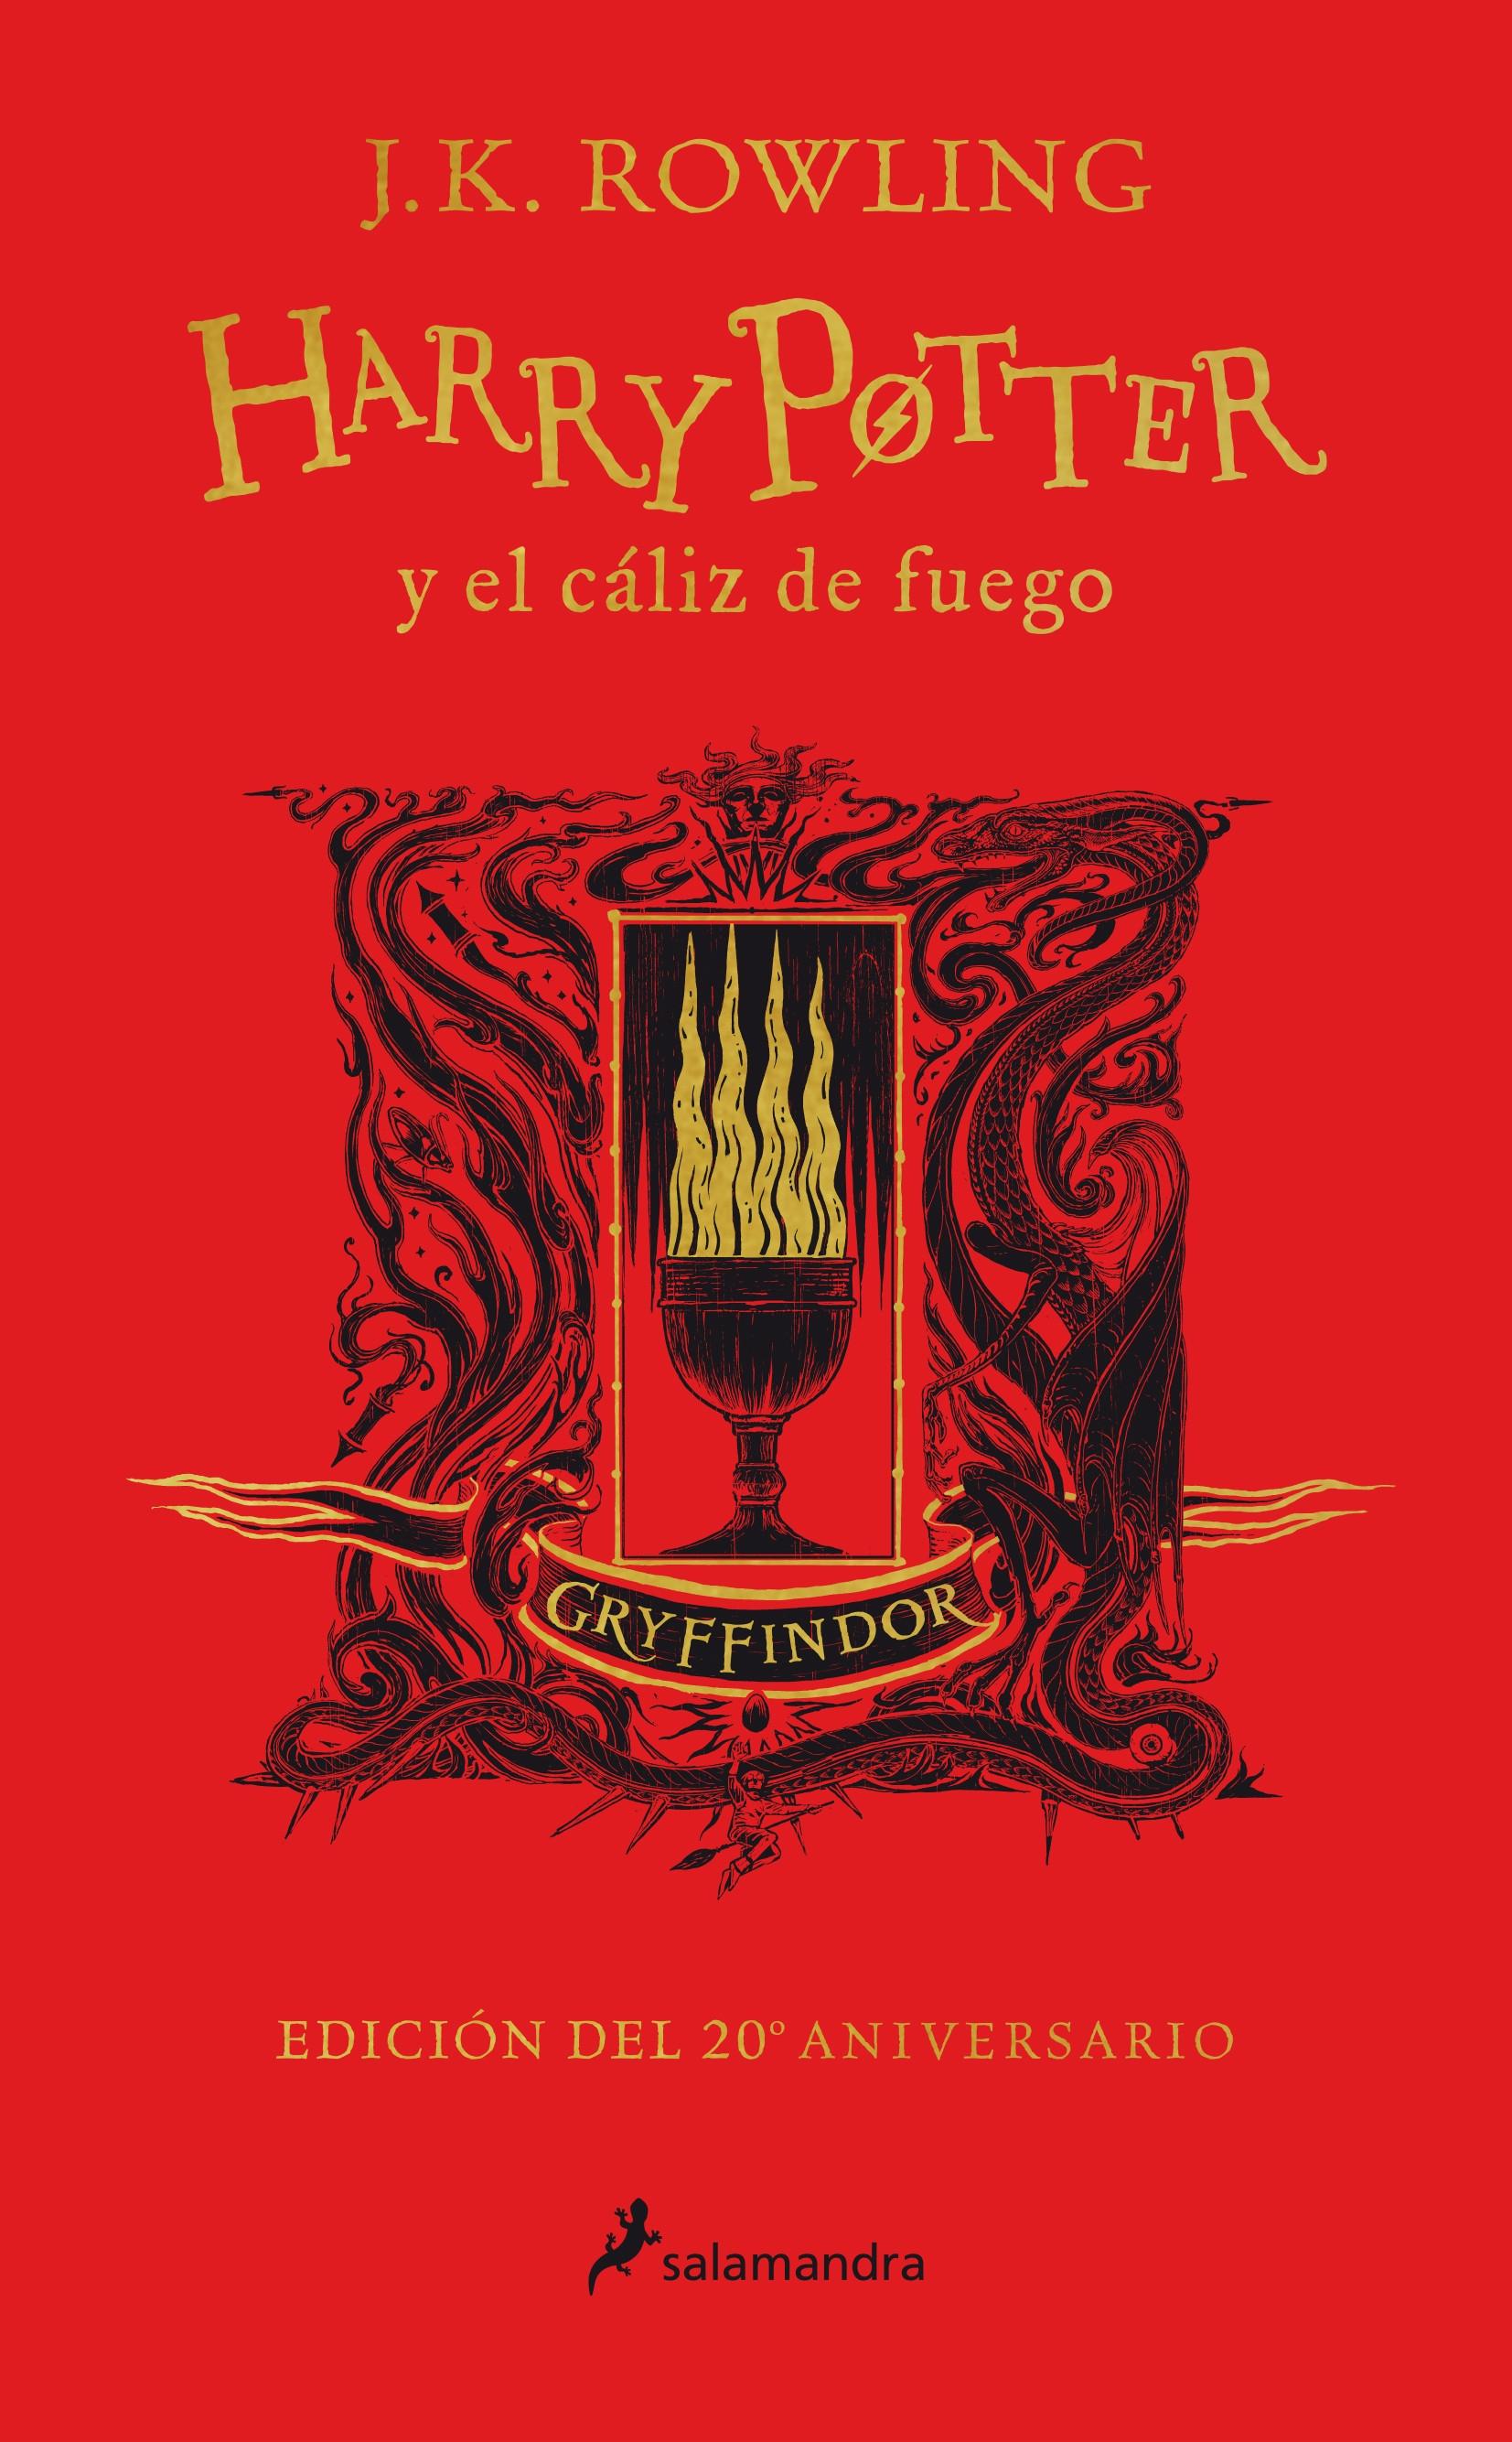 Harry Potter y el cáliz de fuego: Griffindor (Harry Potter - 4) "Valor - Coraje - Audacia (Edición del 20 Aniversario)". 